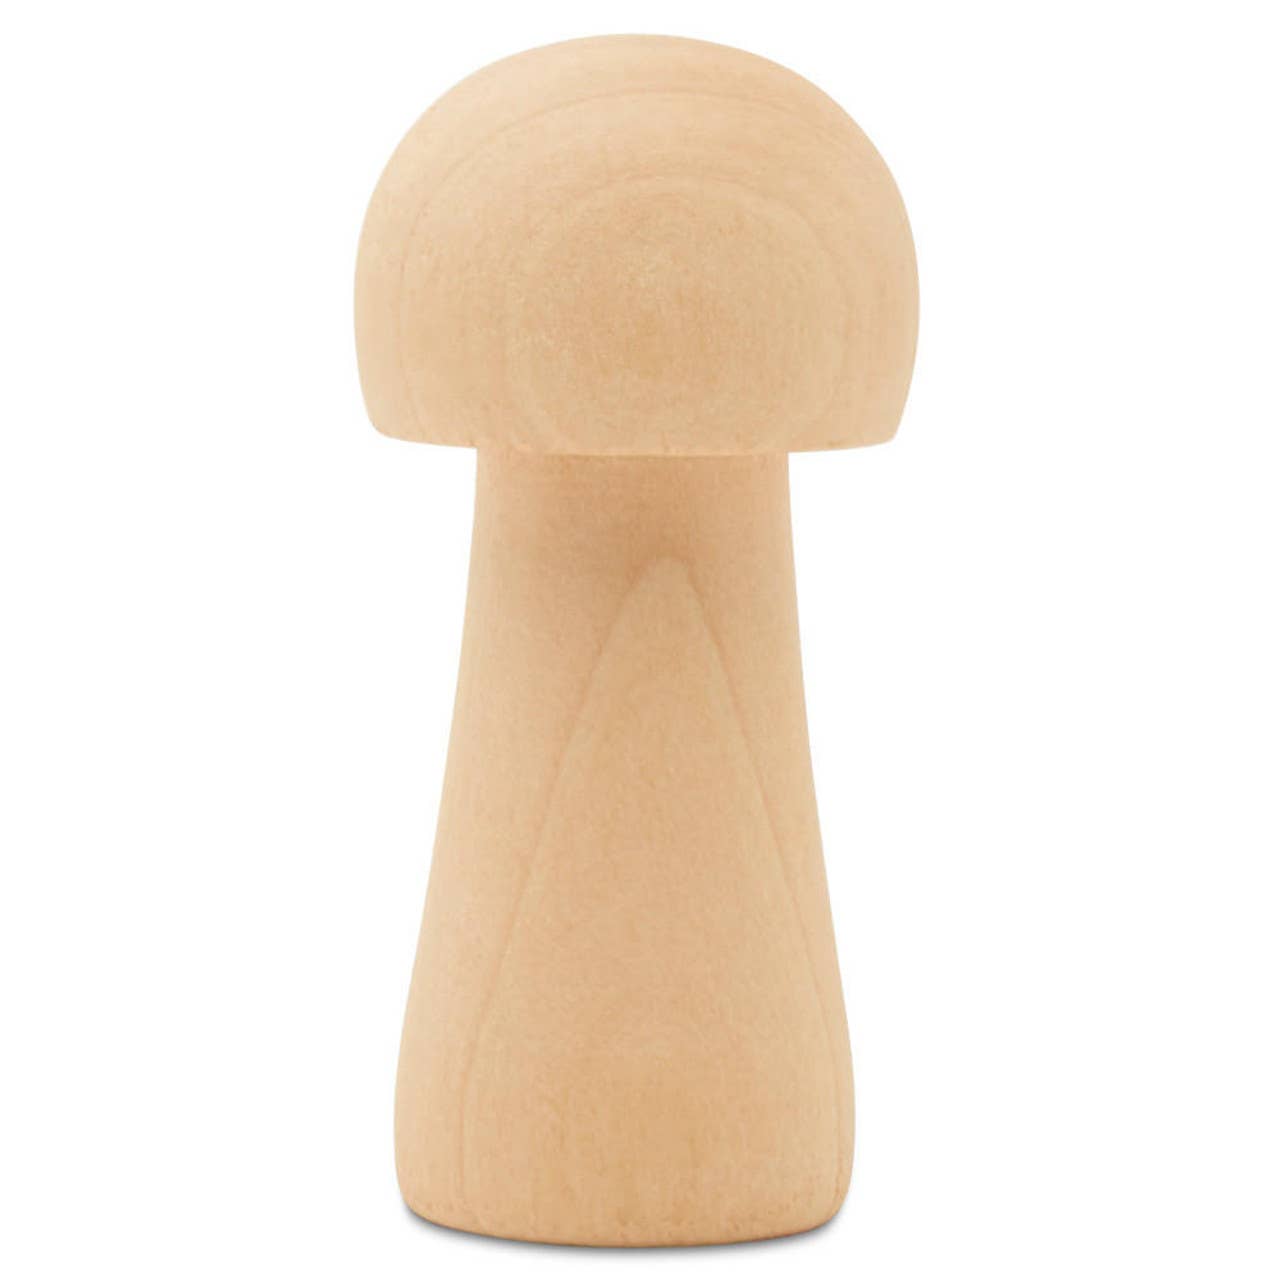 Wooden Mushroom: 2-1/2"